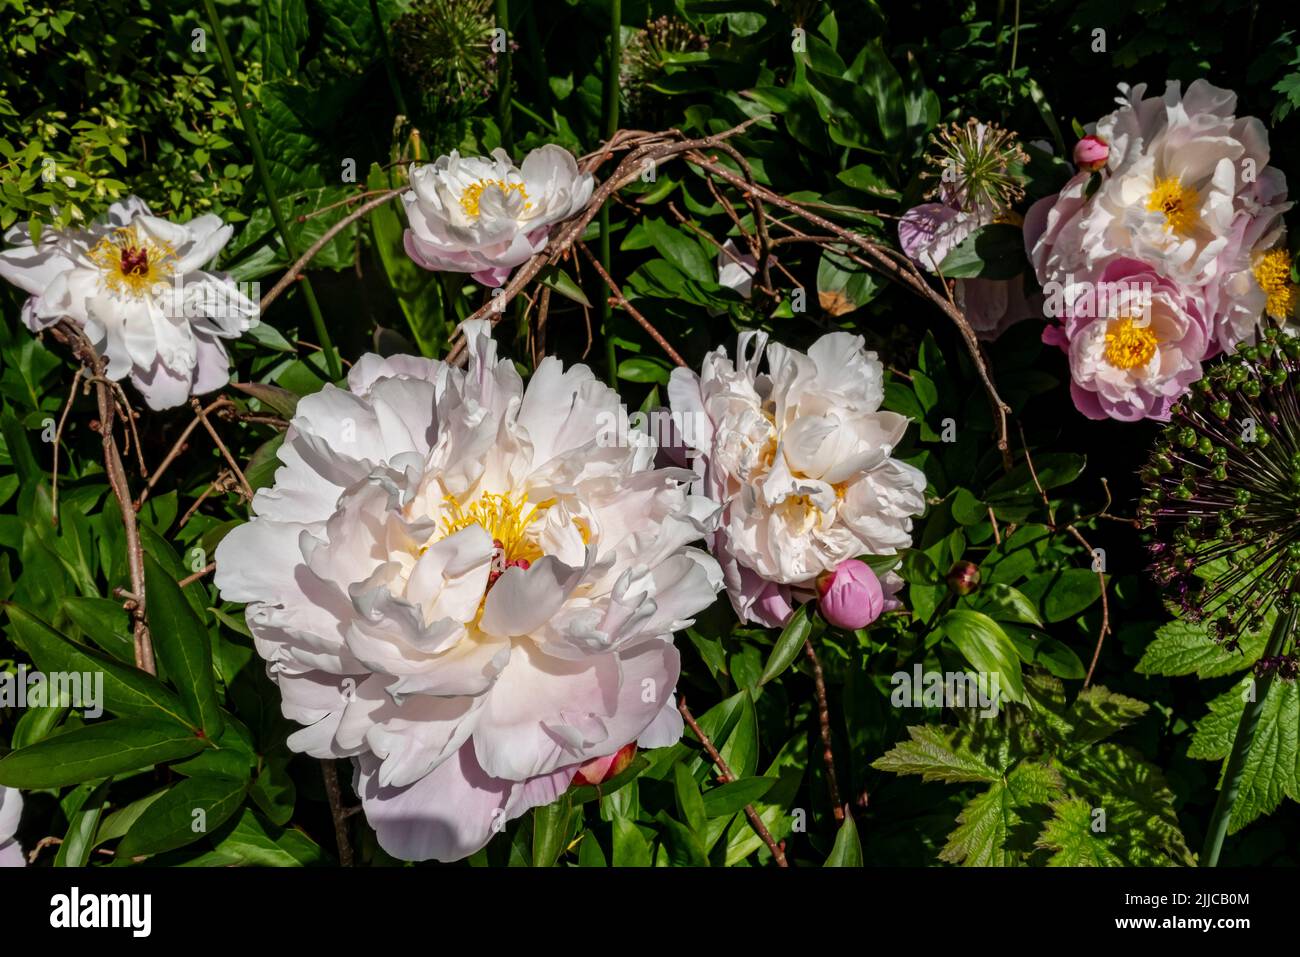 Gros plan des pivoines blanches roses paeonia fleurs fleurs dans le jardin du cottage en été Angleterre Royaume-Uni Grande-Bretagne Banque D'Images